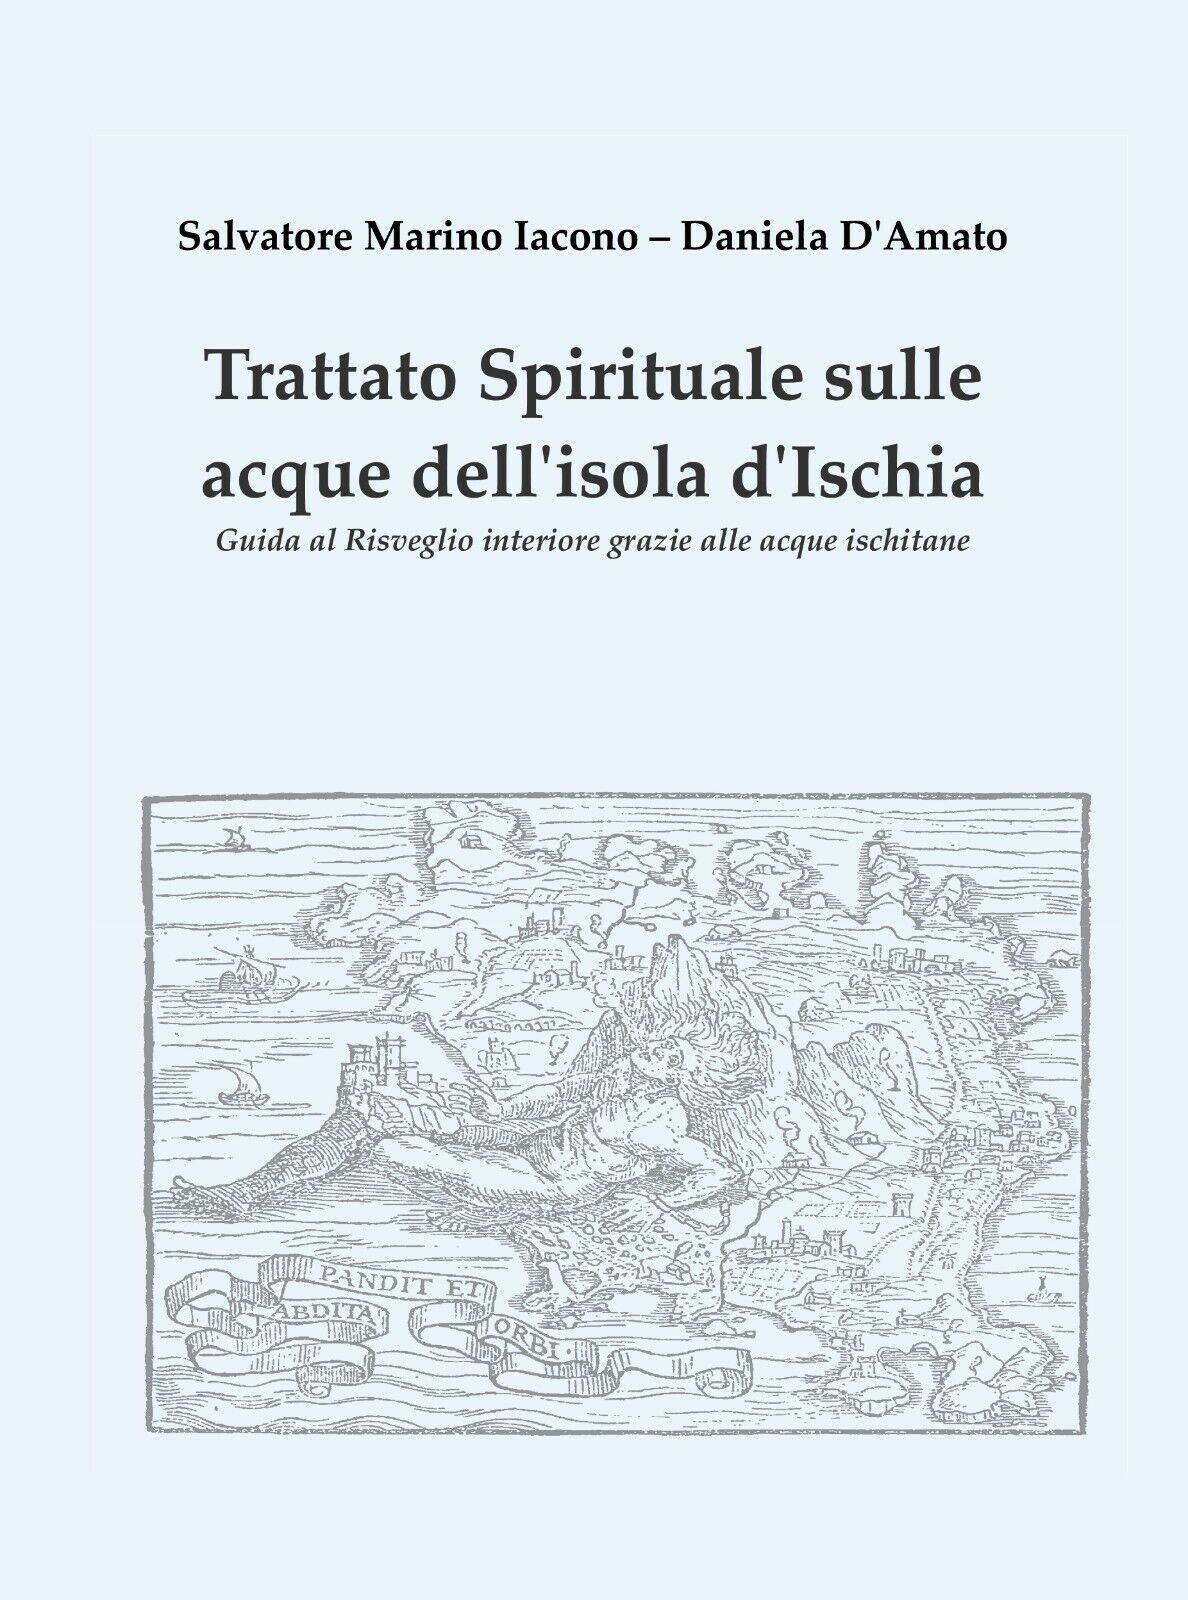 Trattato spirituale sulle acque delL'isola d'Ischia - Salvatore Marino Iacono,